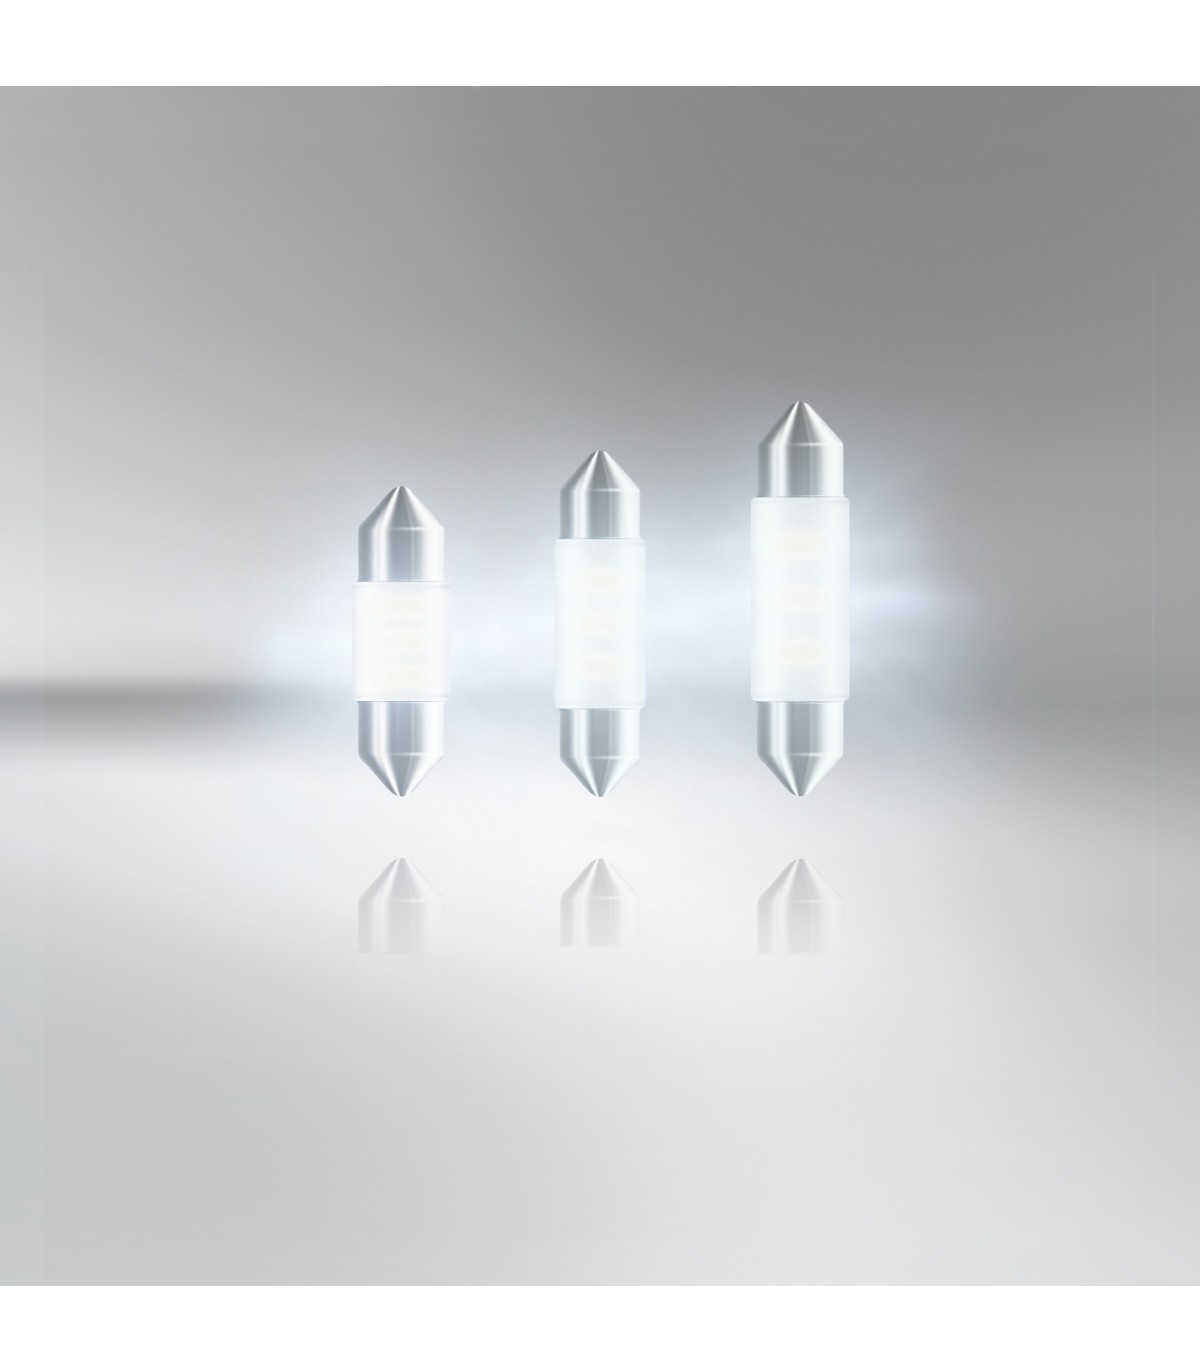 2 x Ampoules Navette SLIM - 3 LEDS 31mm - mirroir - France-Xenon